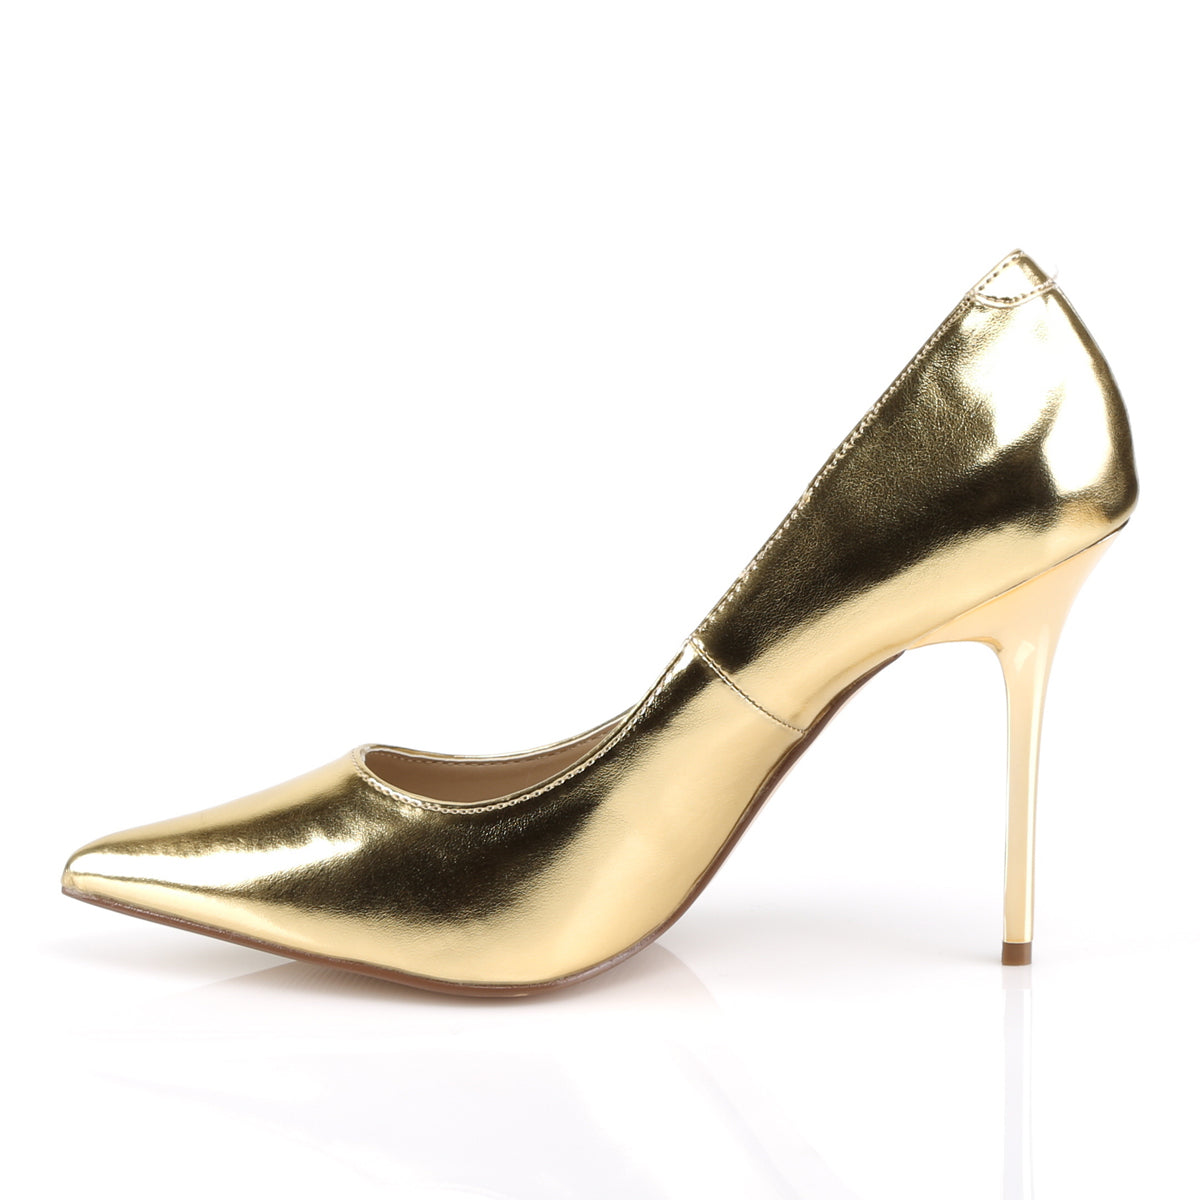 CLASSIQUE-20 Pleaser 4" Heel Gold Metallic Fetish Footwear-Pleaser- Sexy Shoes Pole Dance Heels